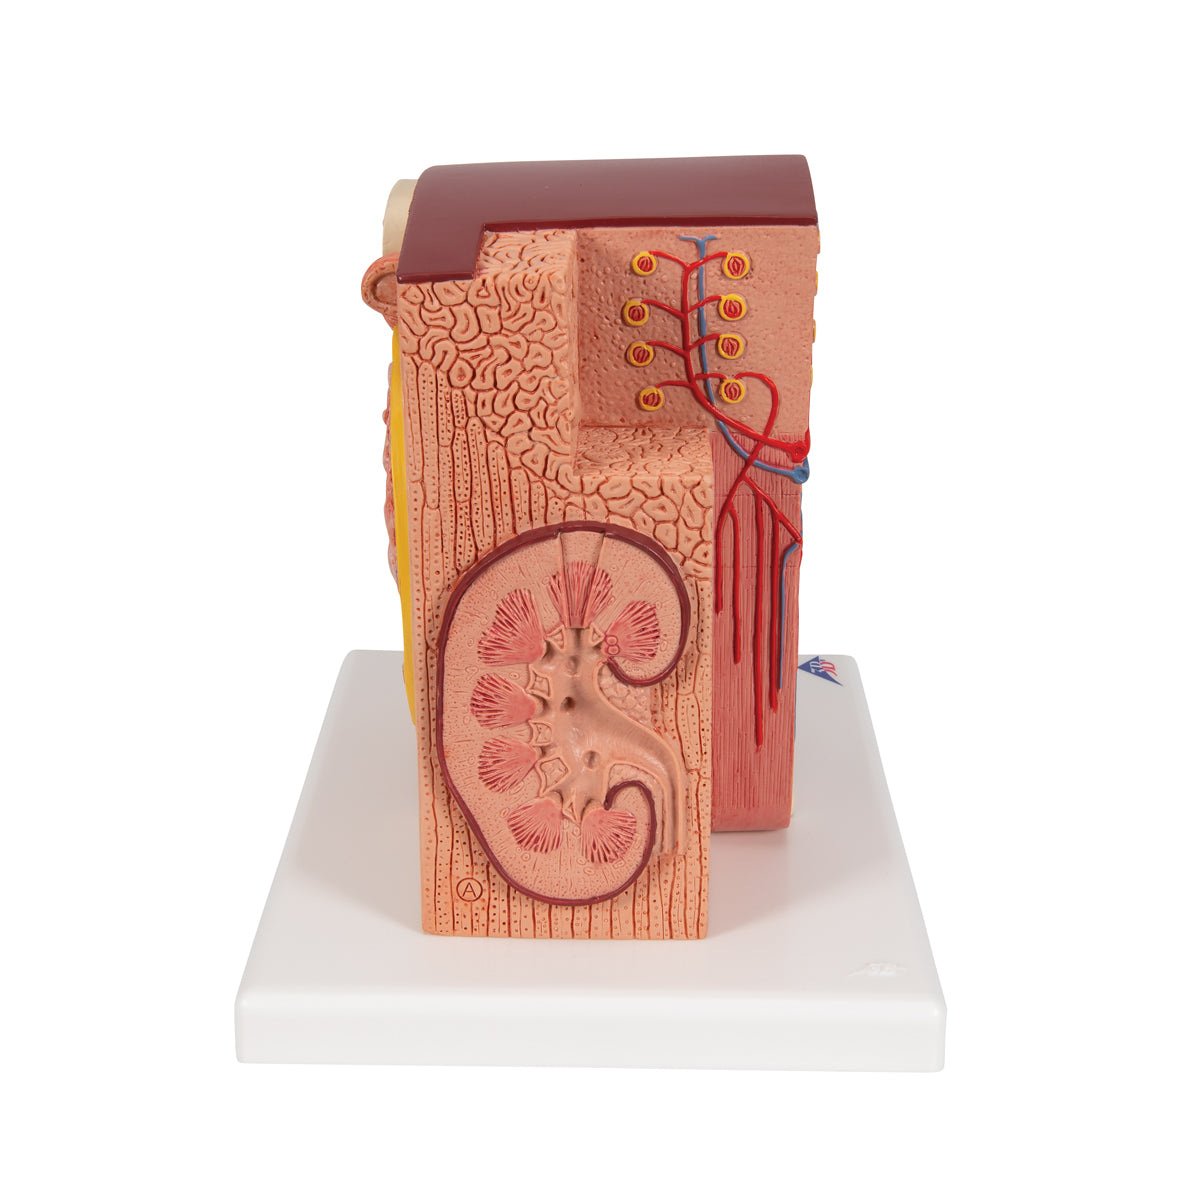 Detaljerad modell av njurens olika vävnader och celler i ett mikroskopiskt perspektiv